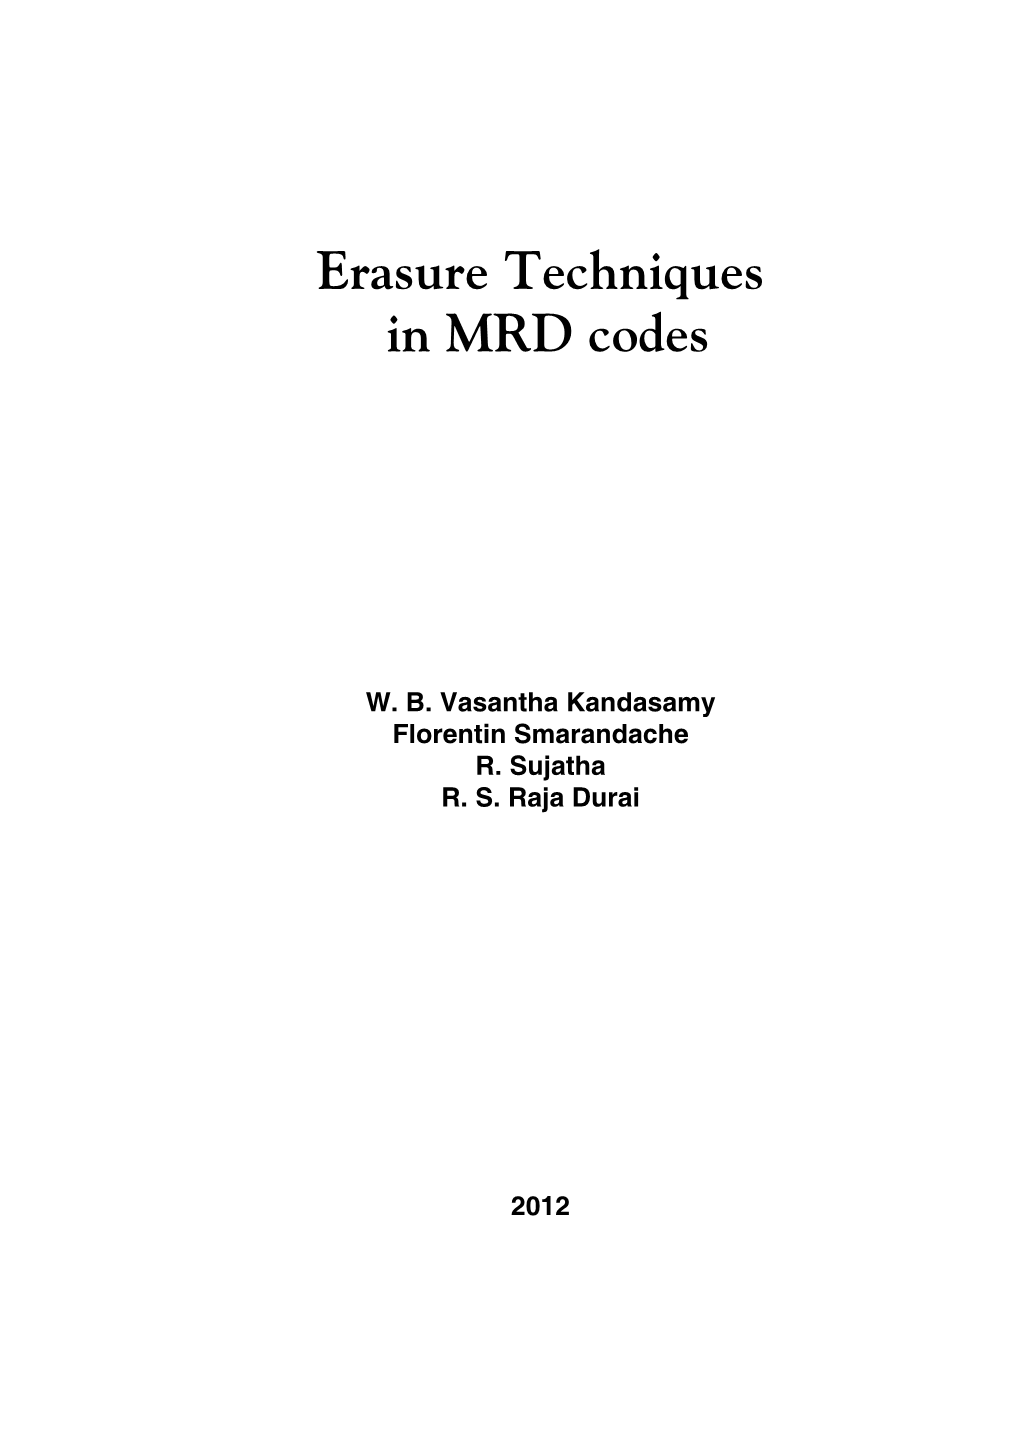 Erasure Techniques in MRD Codes